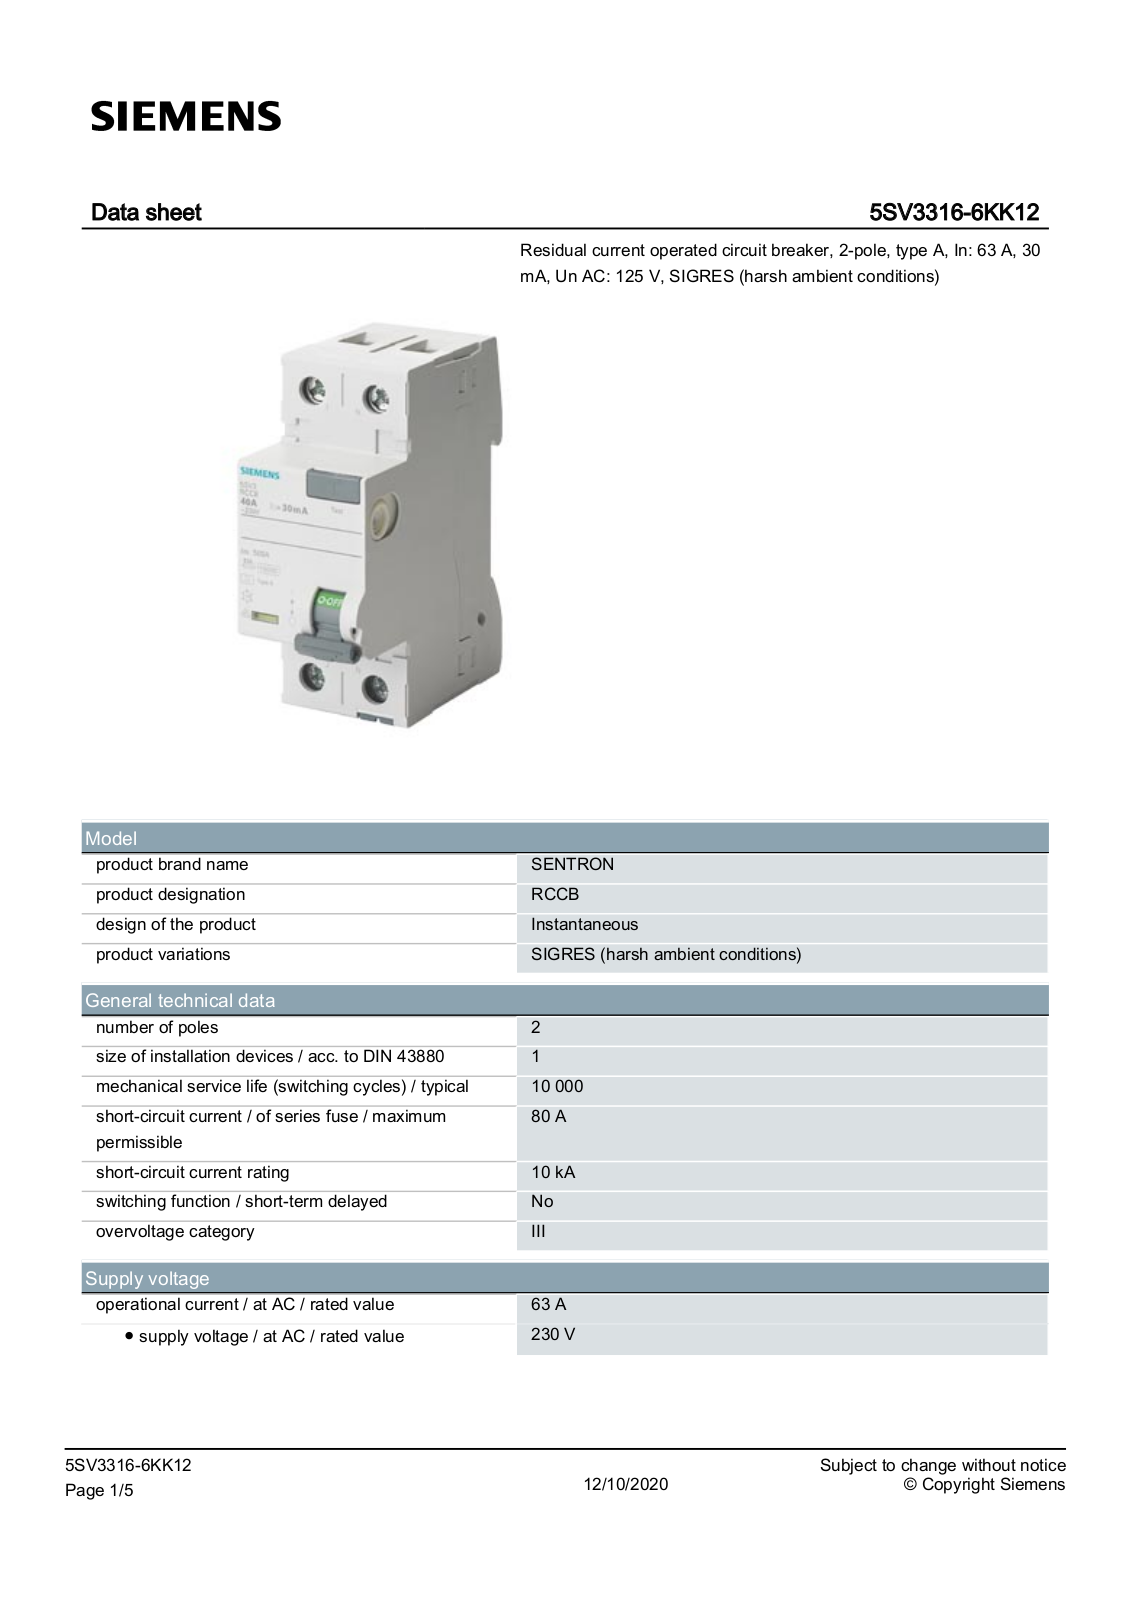 Siemens 5SV3316-6KK12 data sheet